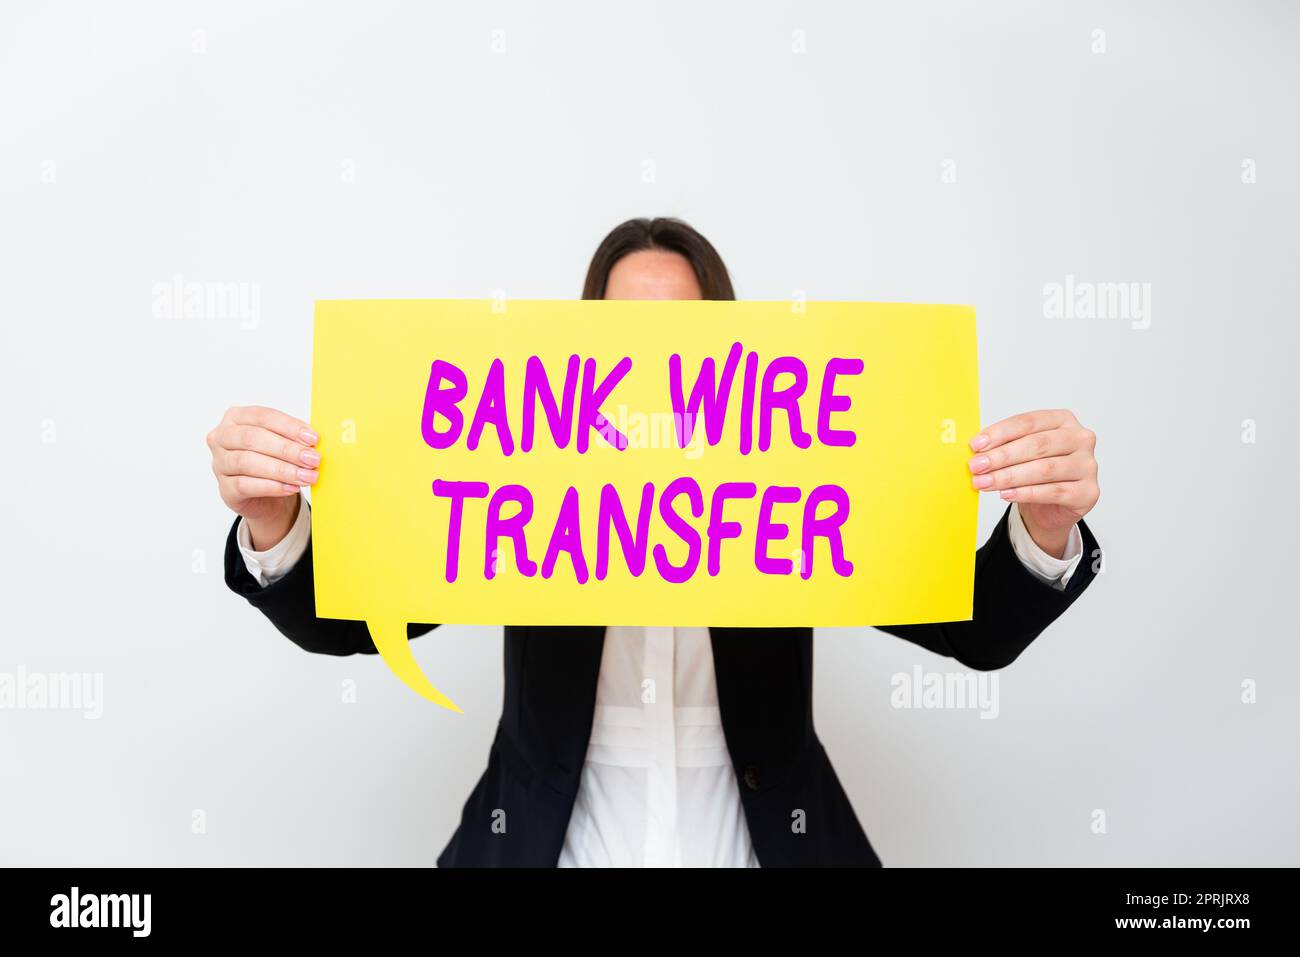 Konzeptionelle Darstellung Banküberweisung elektronischer Geldtransfer von Bank zu Bank. Konzept für elektronischen Geldtransfer von Bank zu Bank Stockfoto